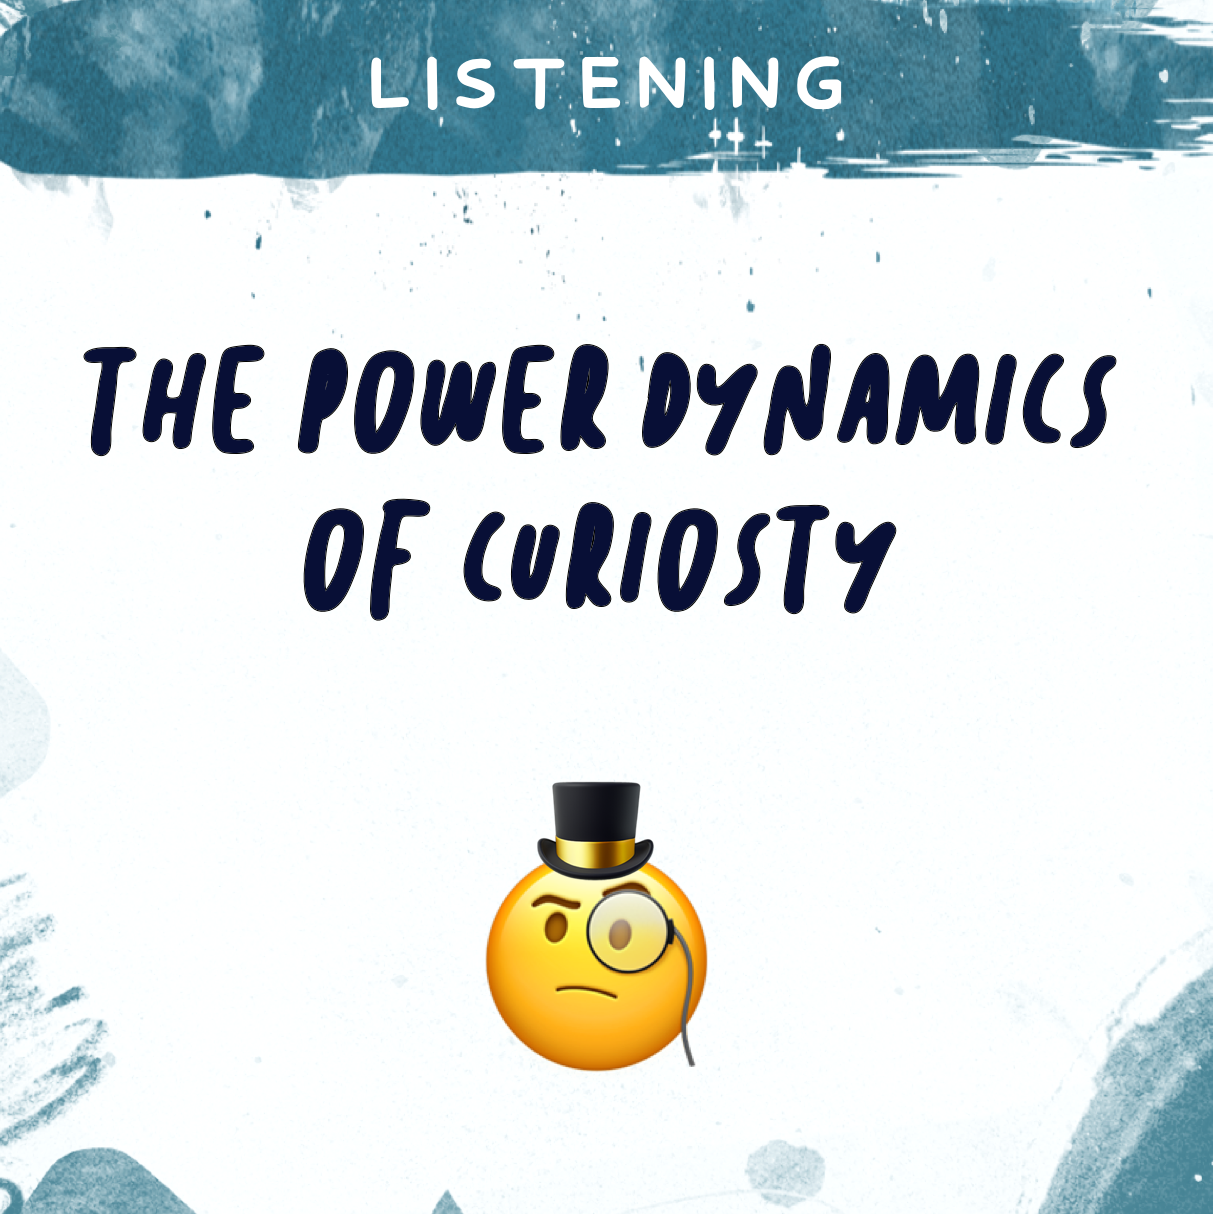 The Power Dynamics of Curiosity